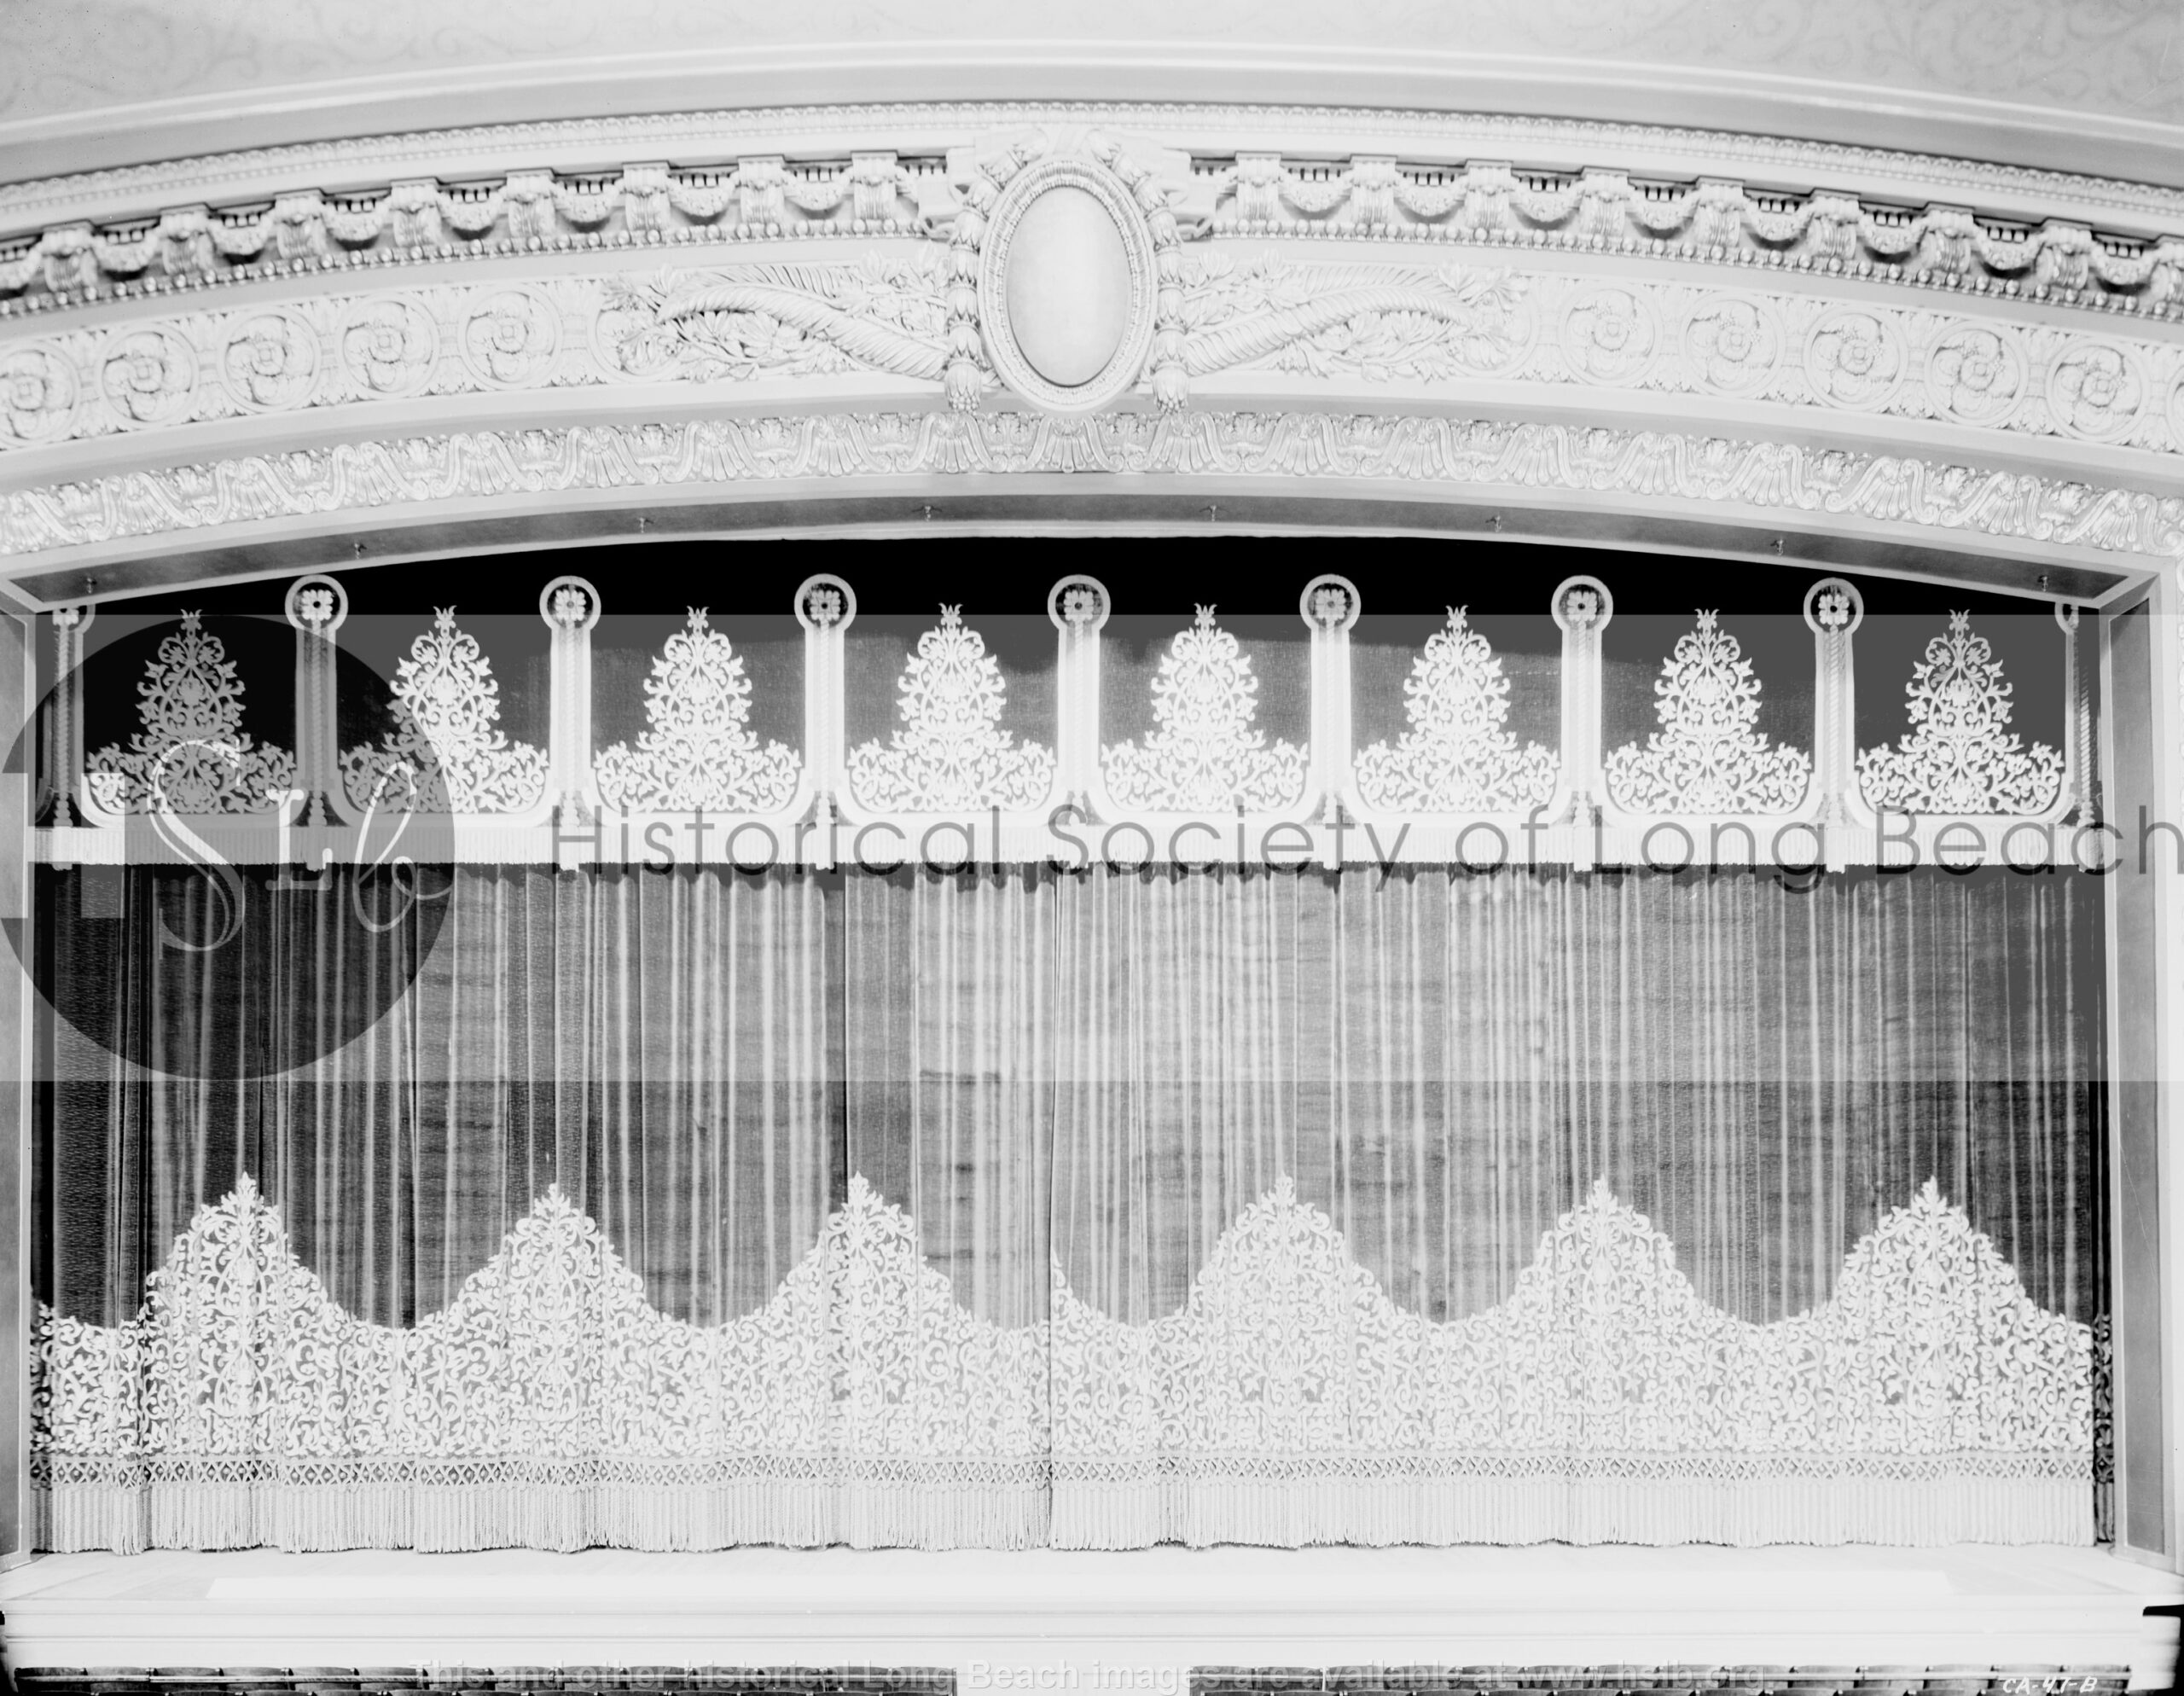 Municipal Auditorium curtains, 1932